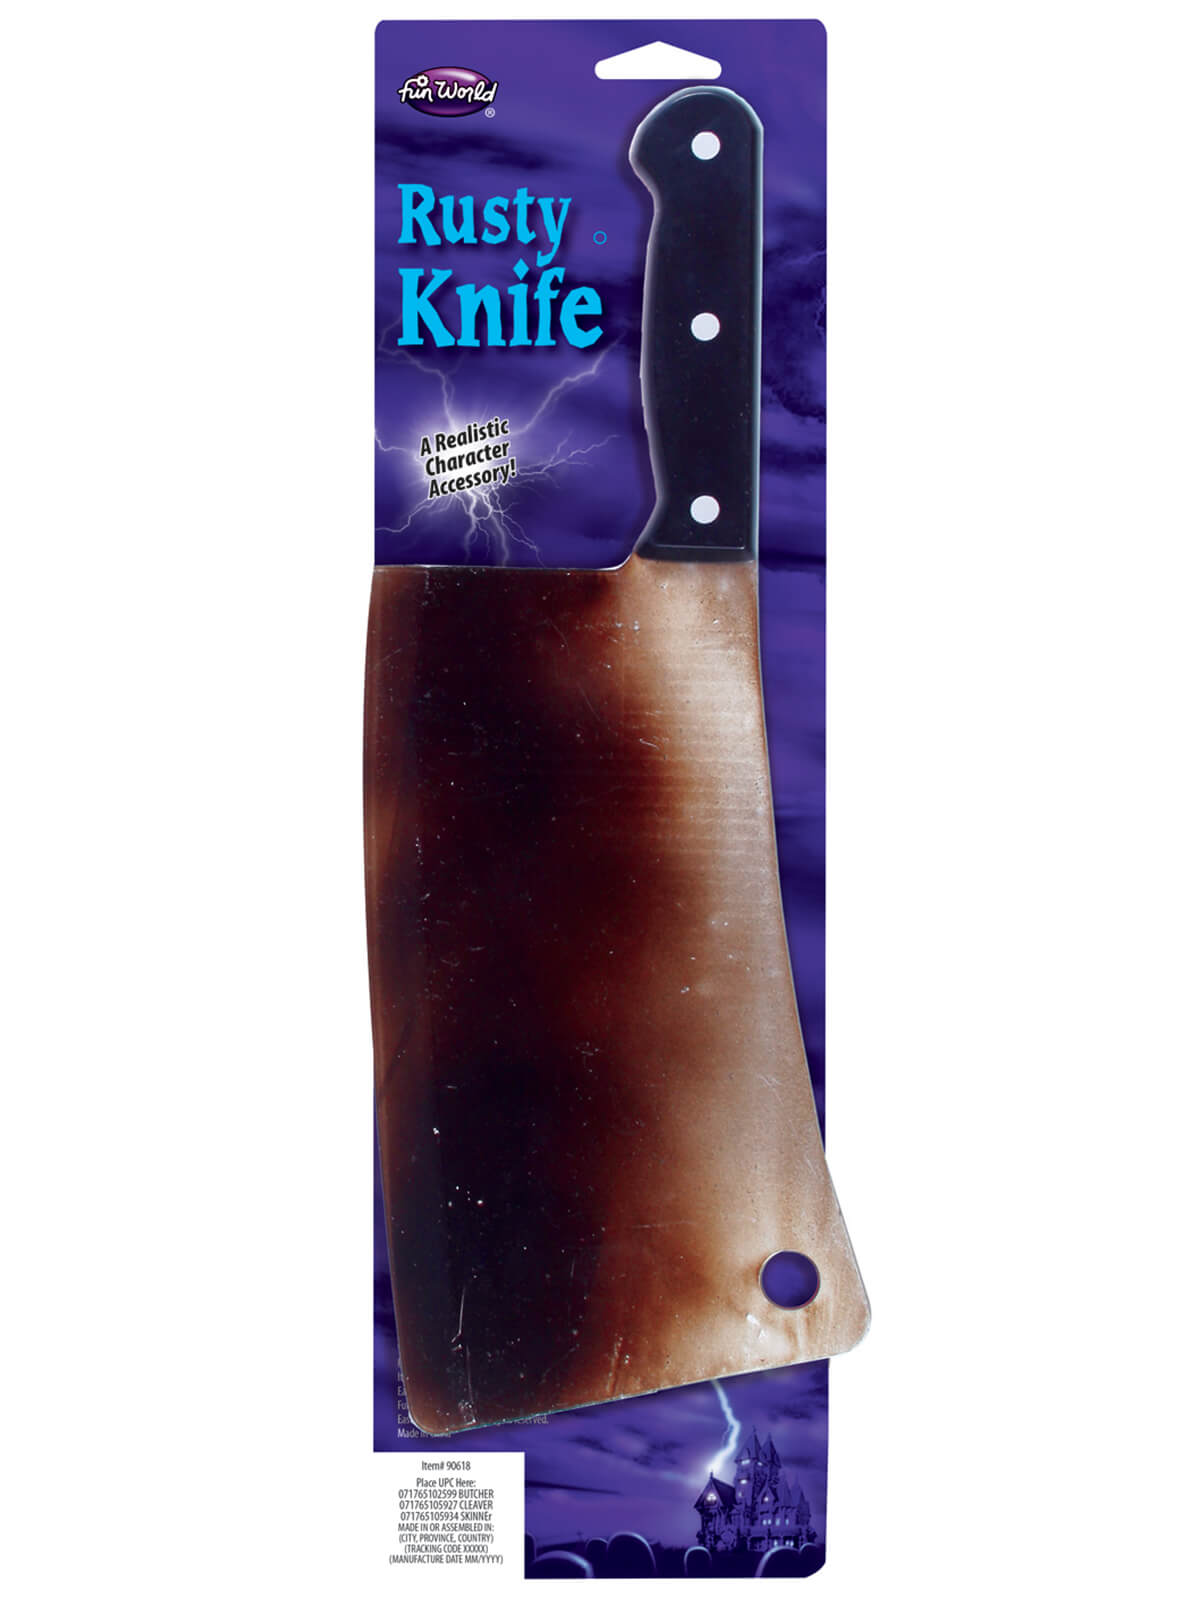 Rusty Butcher Knives 3 Asst (31 cm)